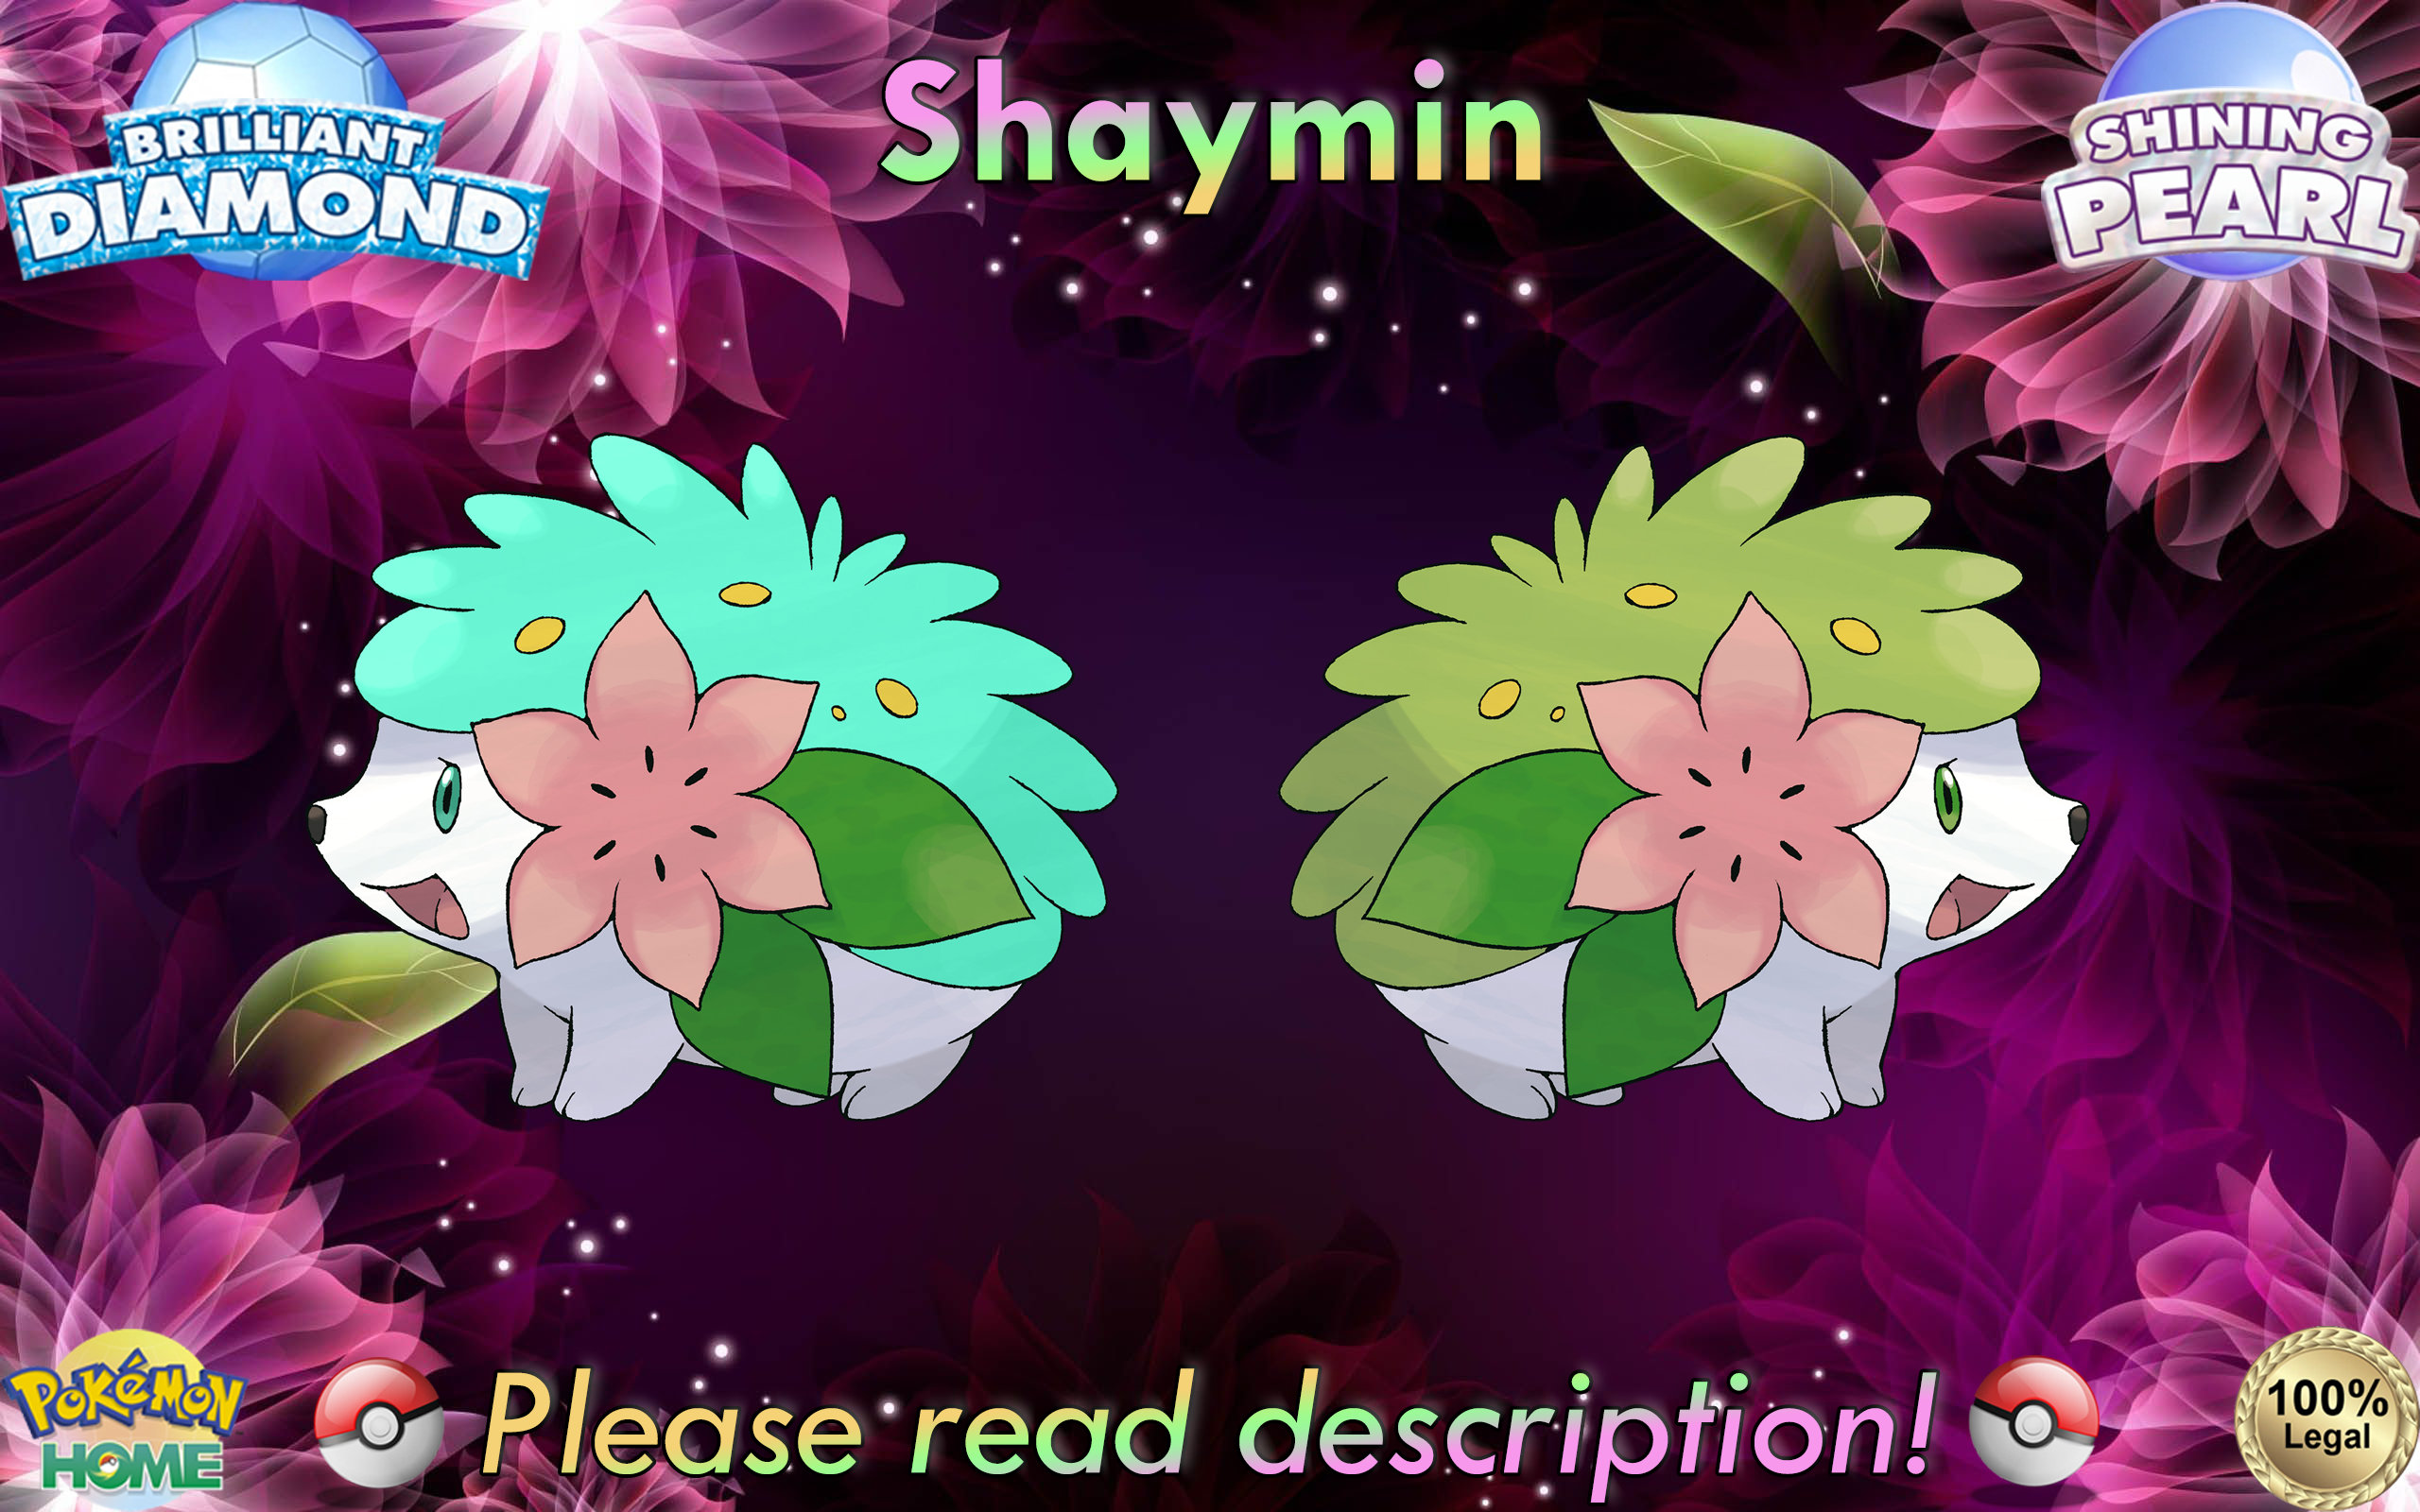 Shaymin Sky Forme v.2: Shining  Dog pokemon, Shiny pokemon, Cool